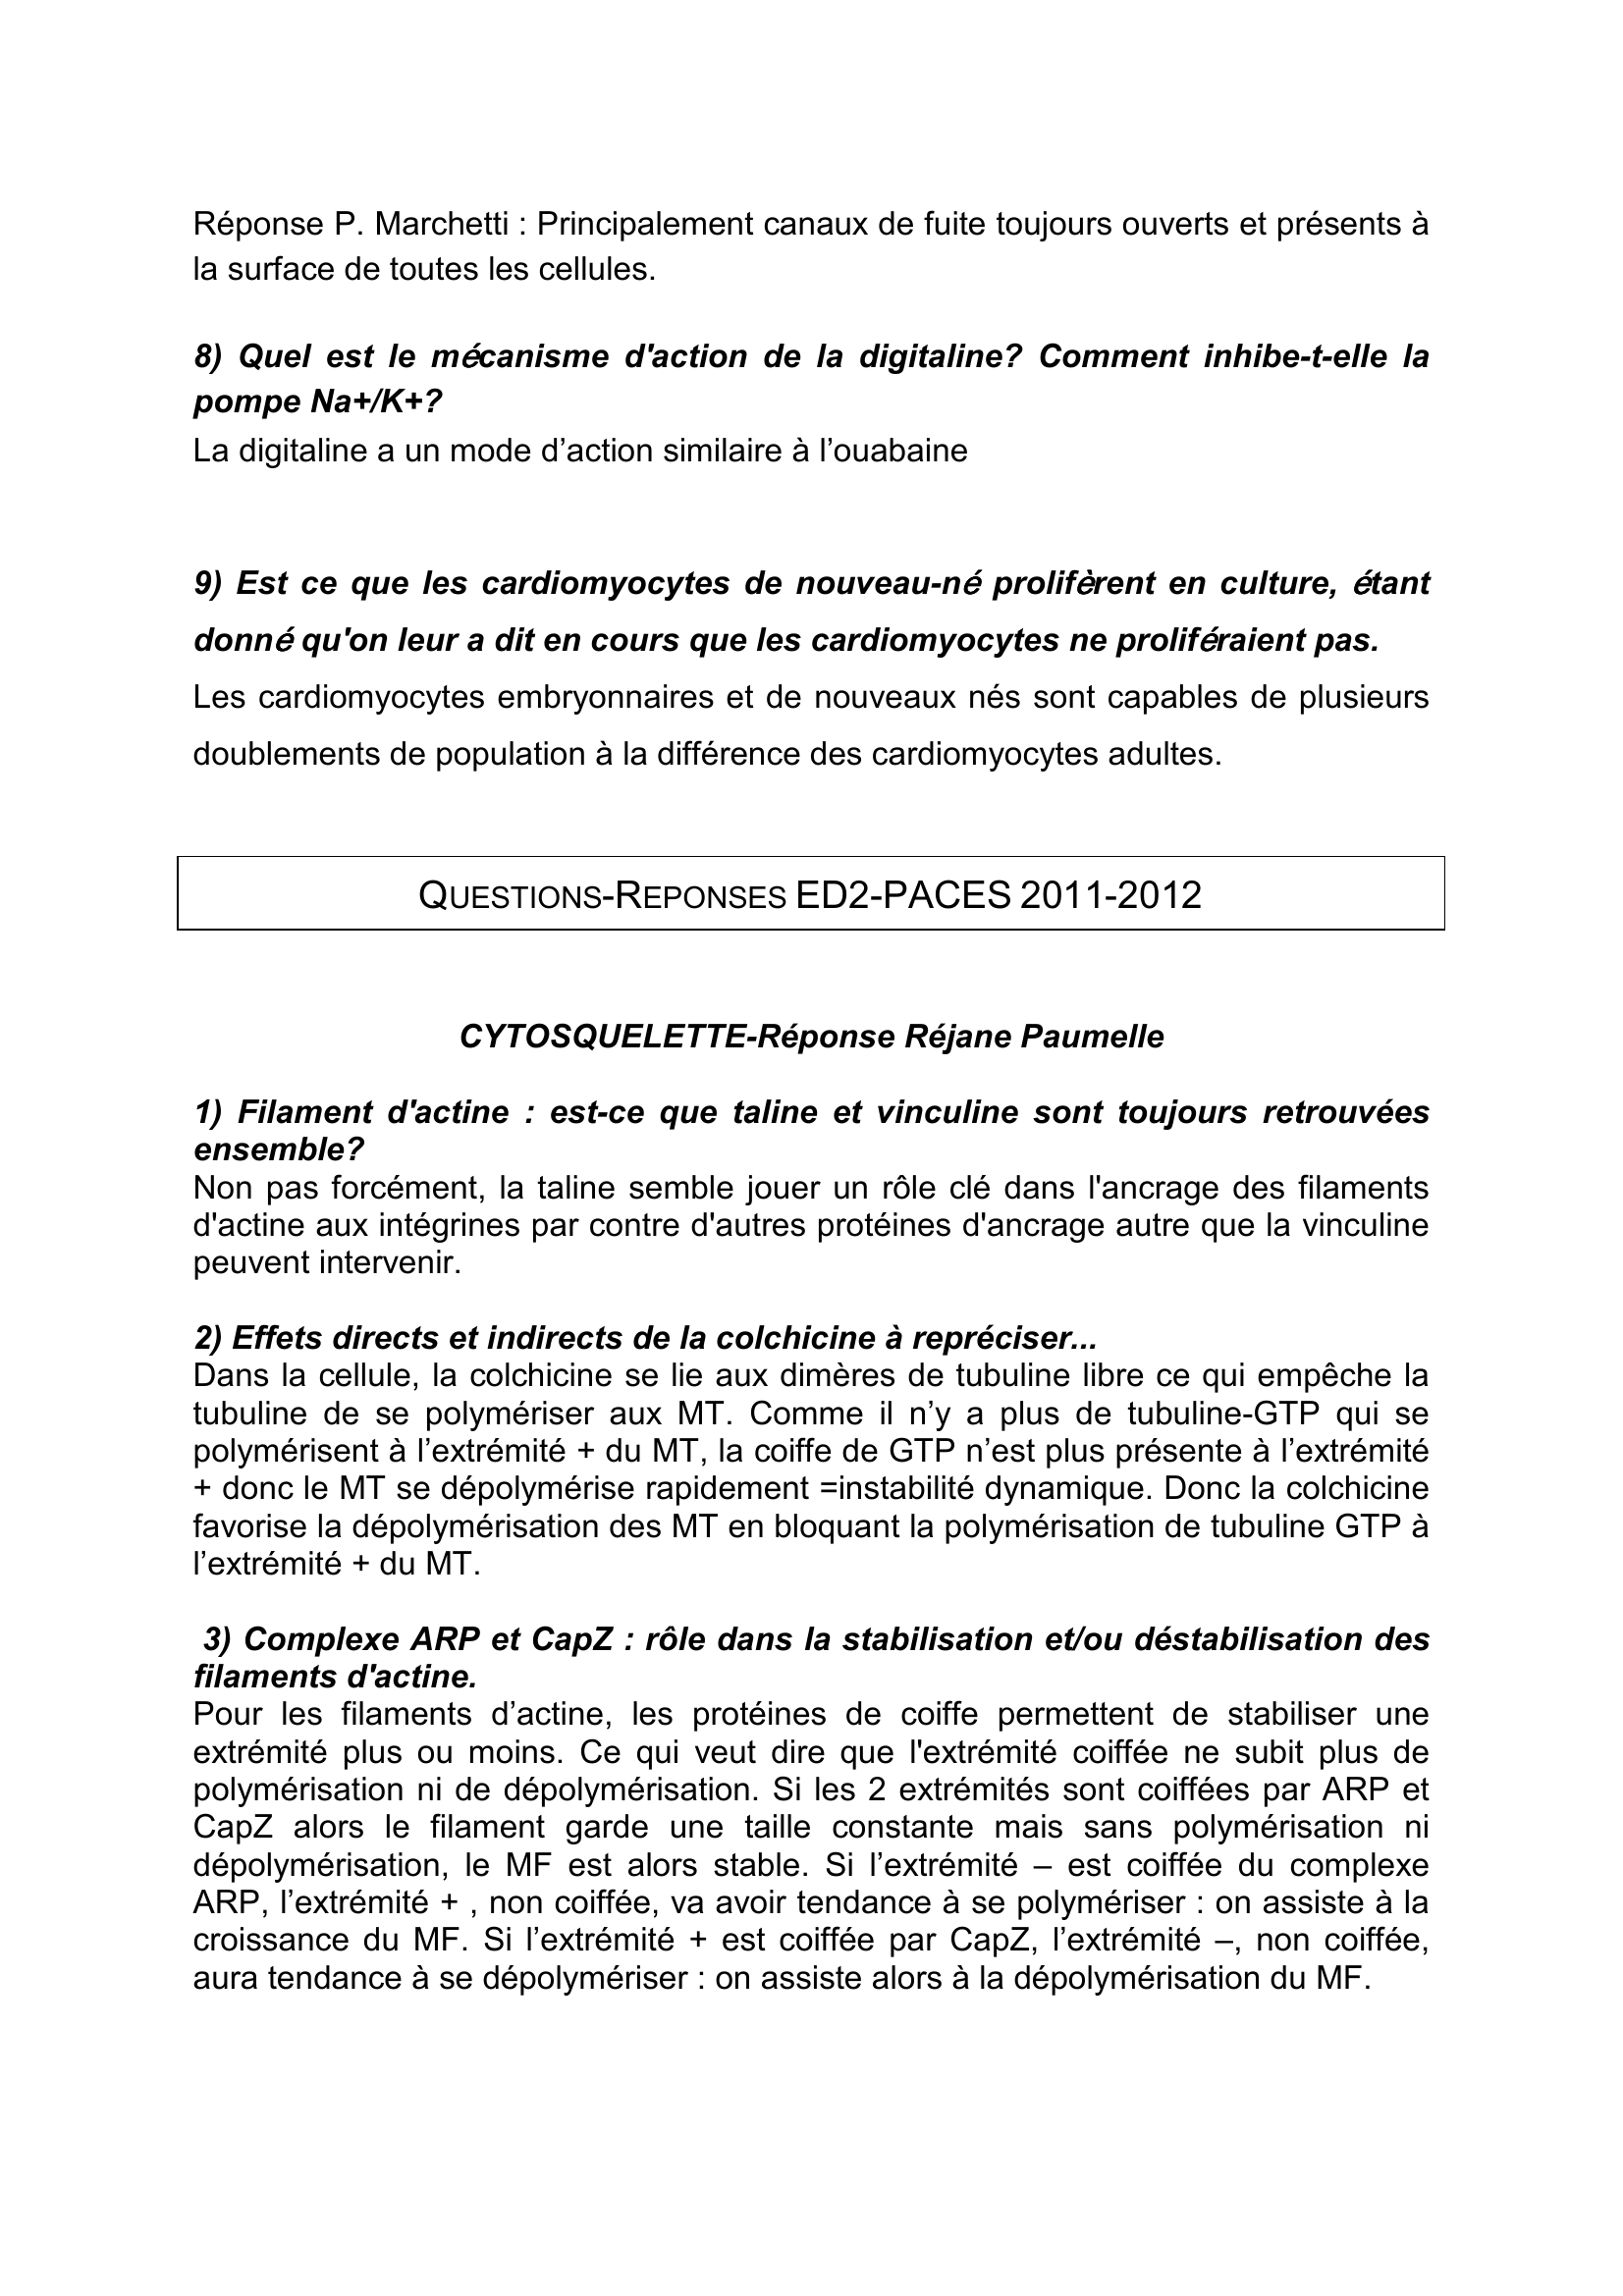 Prévisualisation du document QUESTIONS-REPONSES ED1-PACES 2011-2012 (annales)